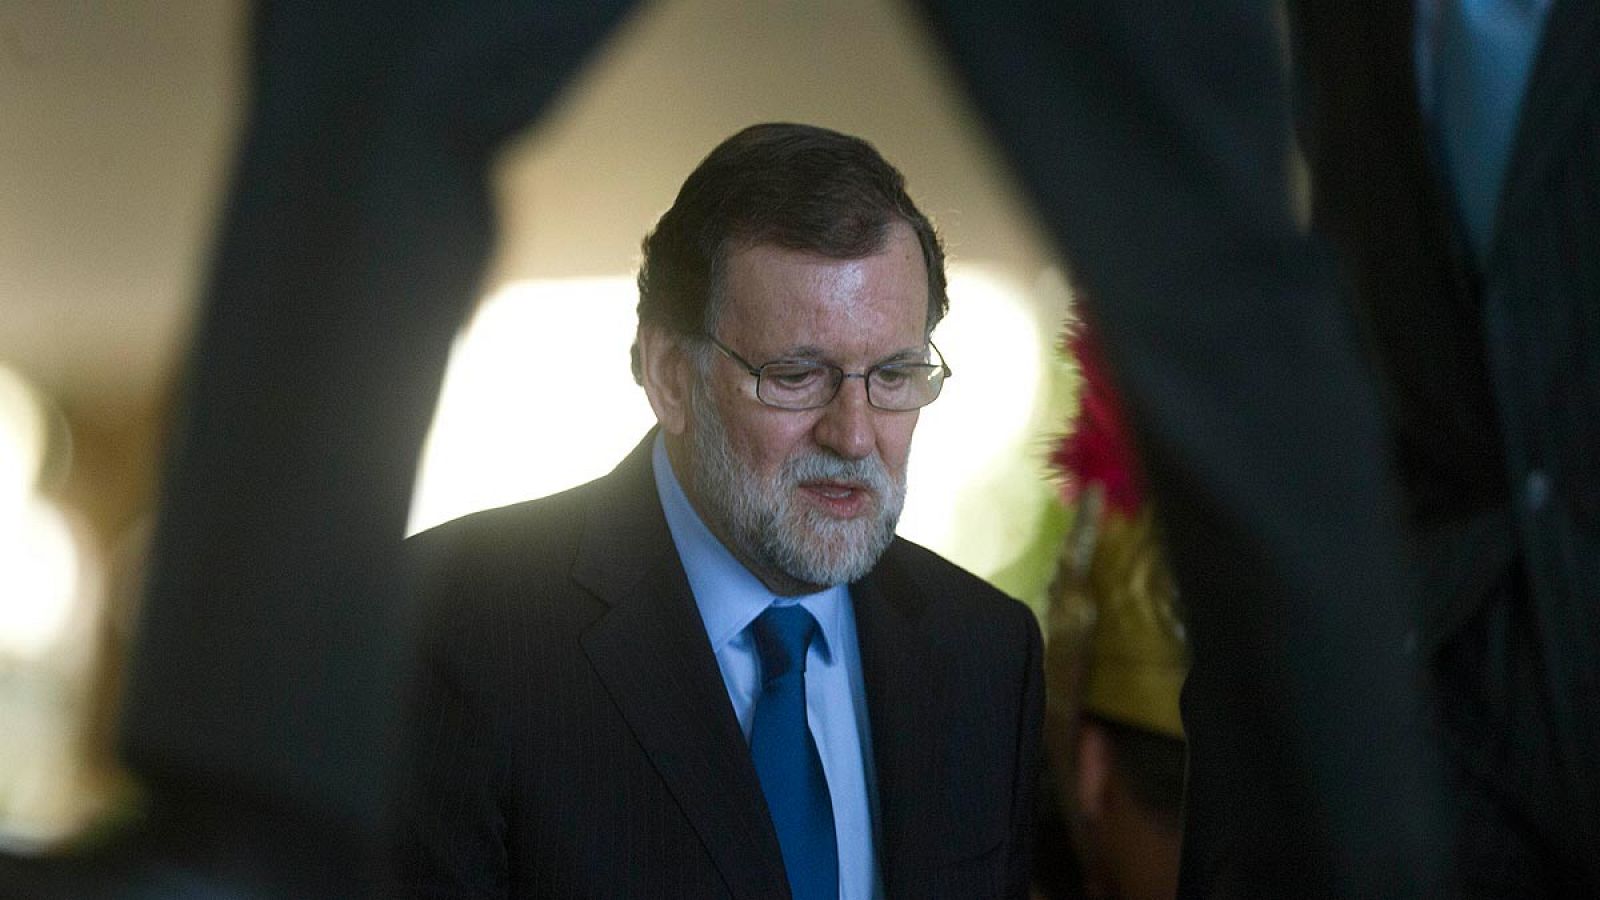 La oposición pide la creación urgente de la comisión para investigar la financiación del PP y que Rajoy comparezca en ella